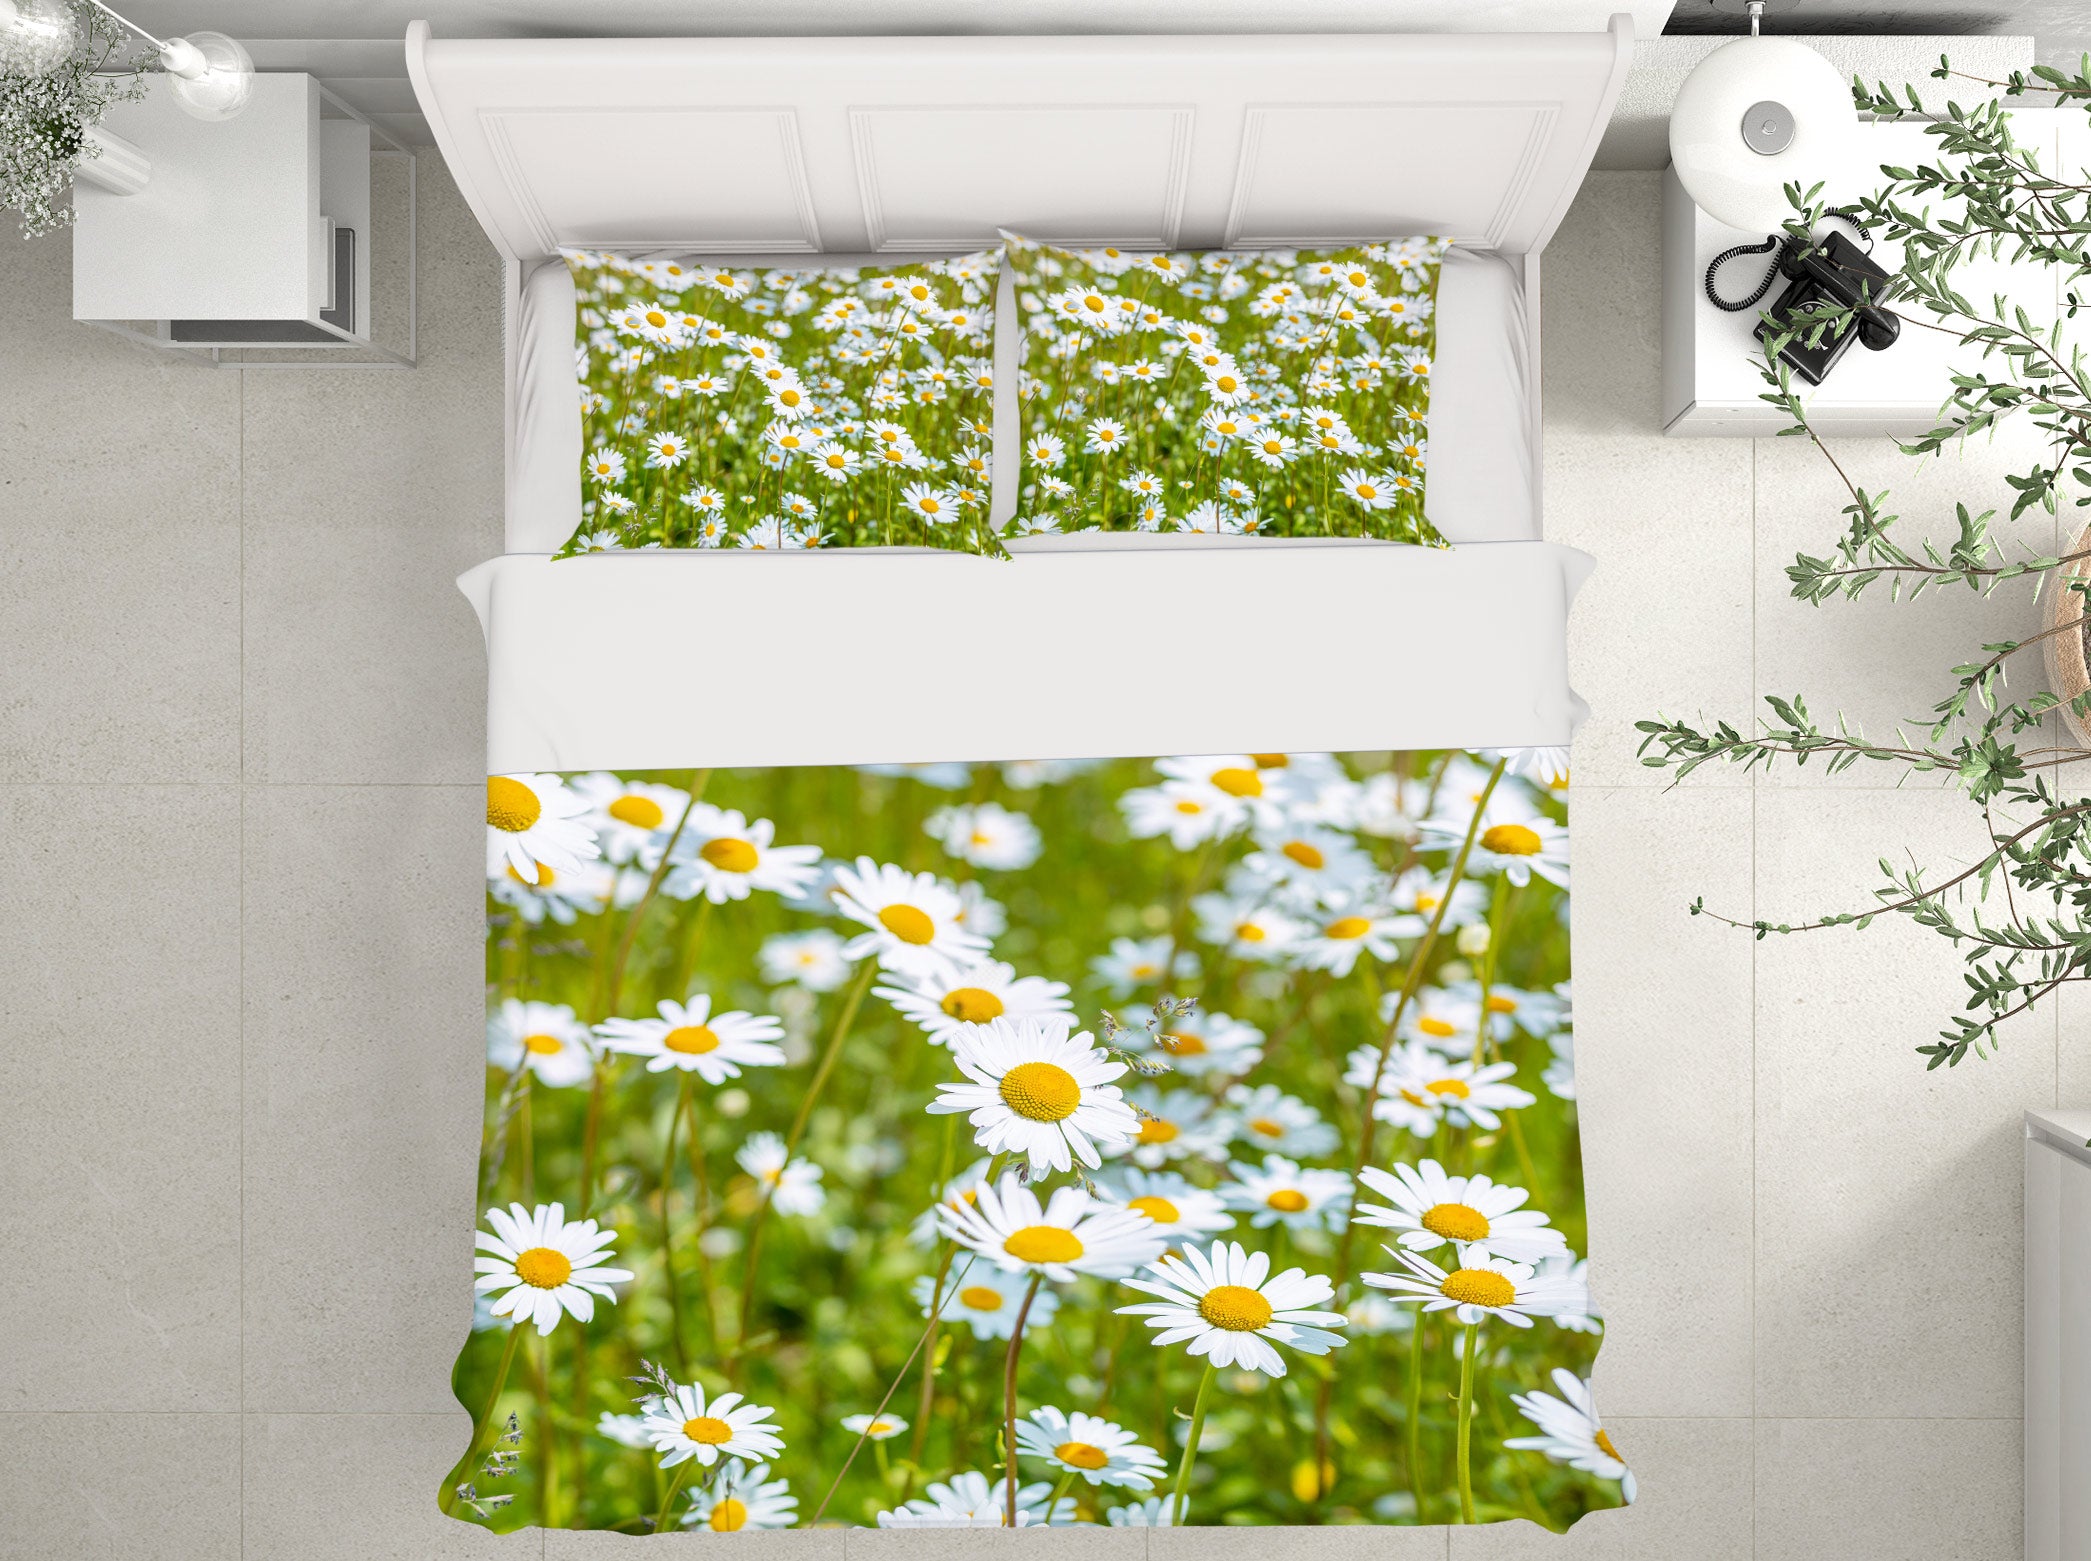 3D White Daisy 6962 Assaf Frank Bedding Bed Pillowcases Quilt Cover Duvet Cover